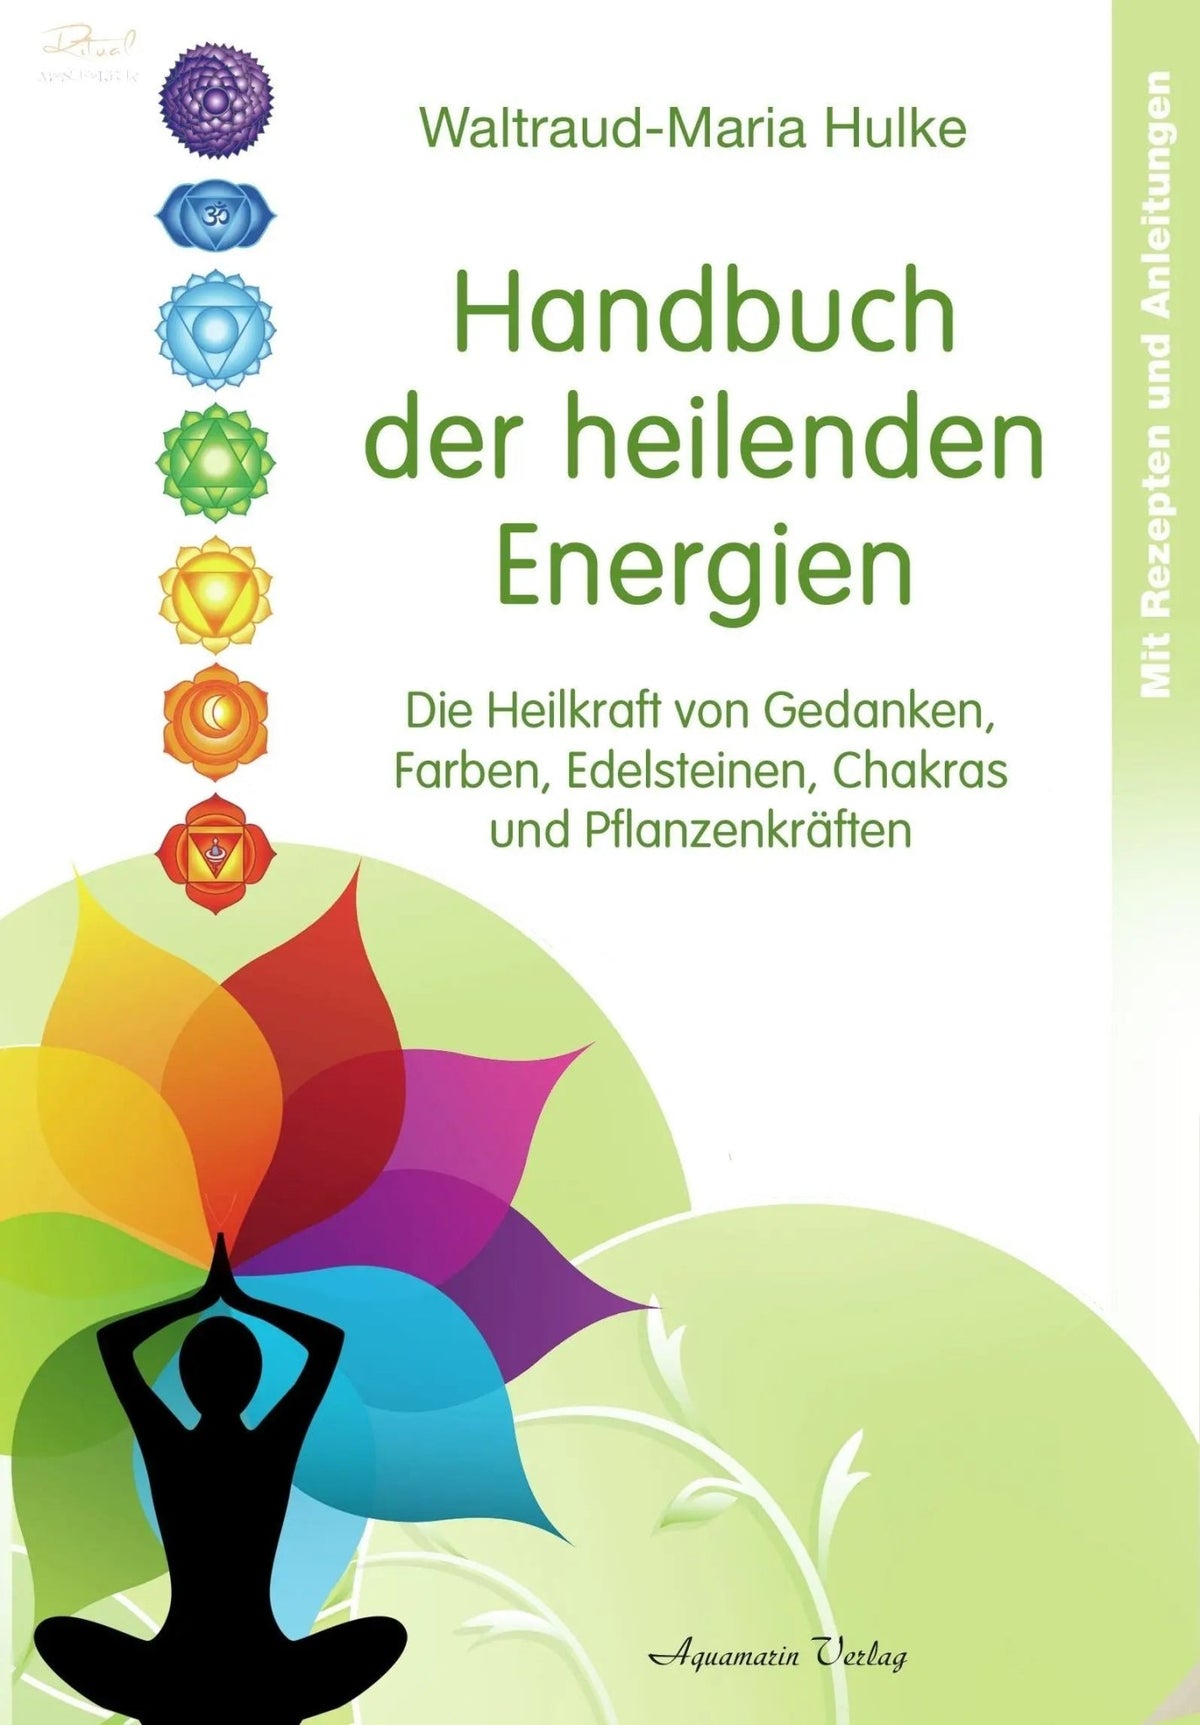 Handbuch der heilenden Energien von W.-M. Hulke Ritualmanufaktur